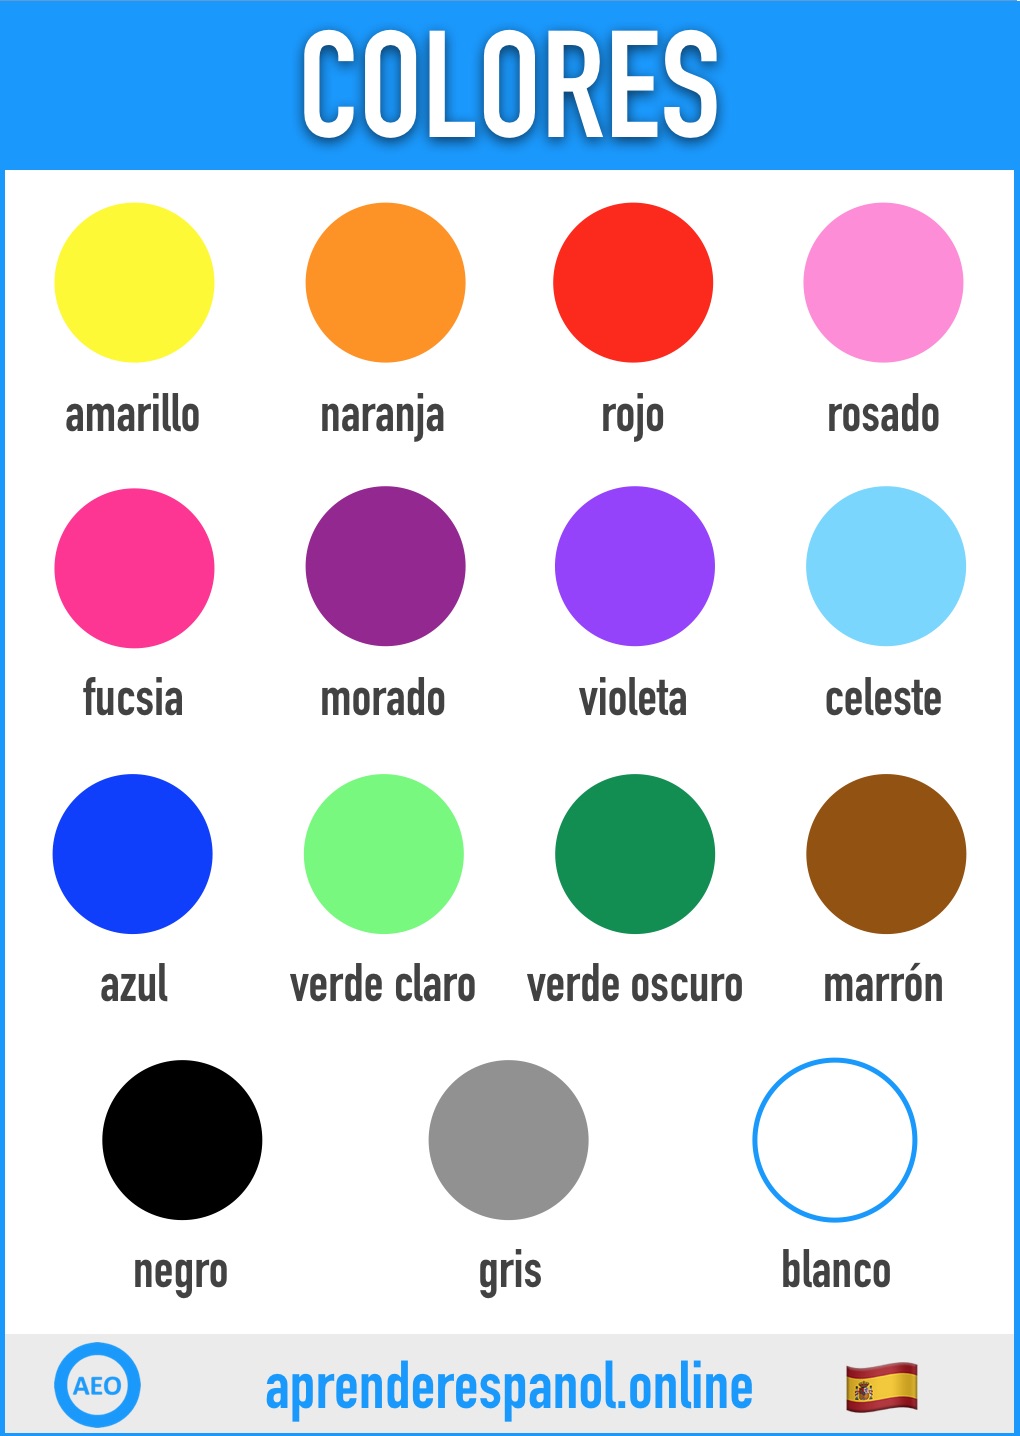 colores en espanol - aprender español online - vocabulario de los colores en español